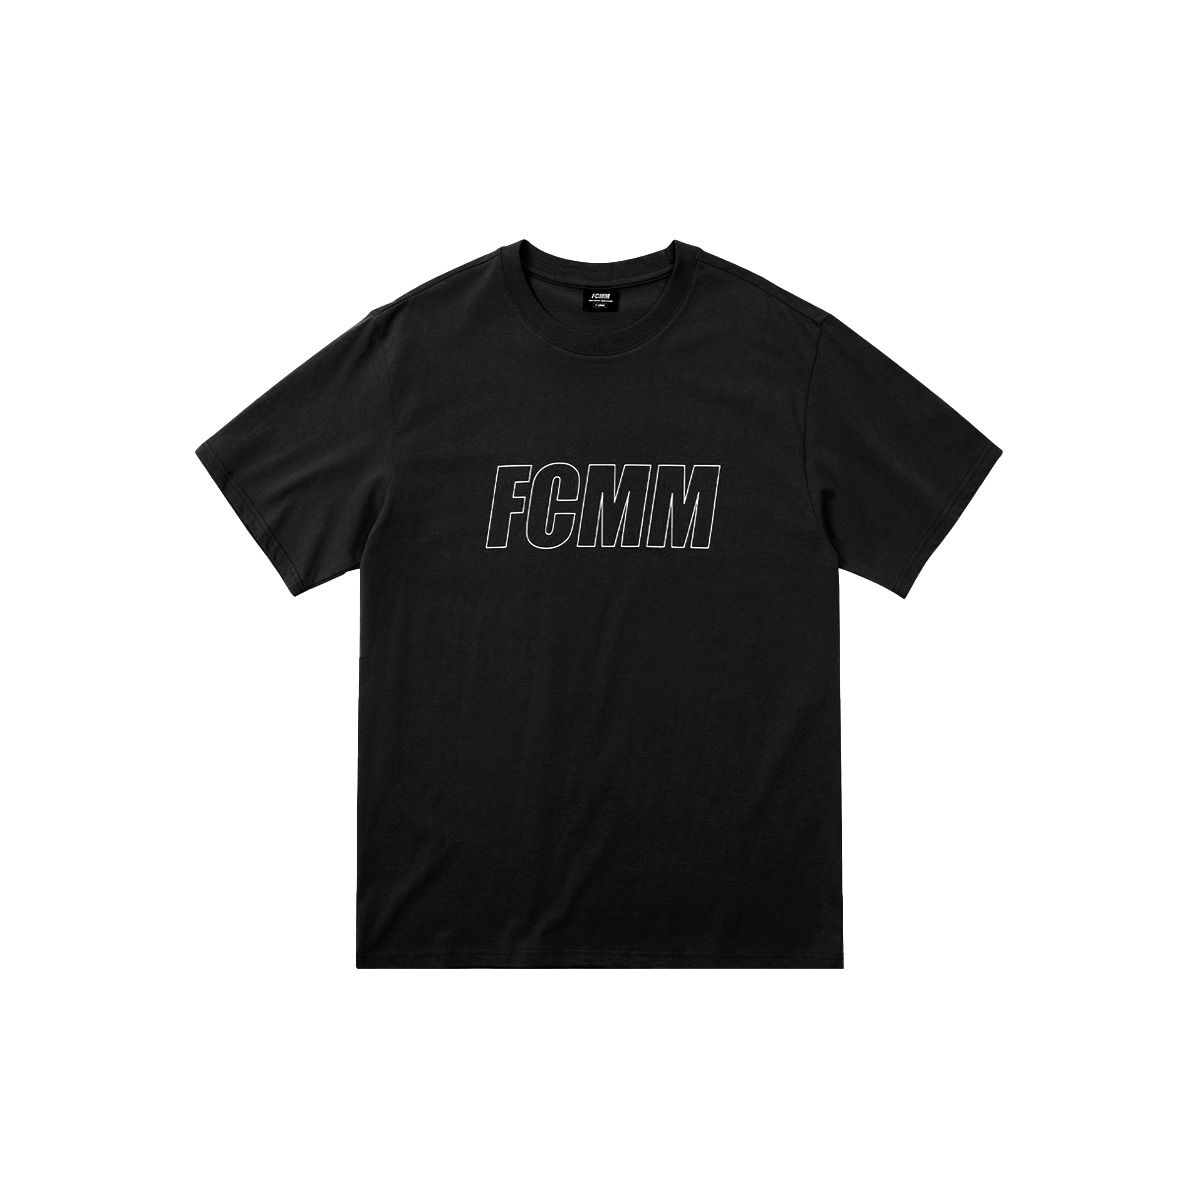 리니어 로고 티셔츠 - 블랙